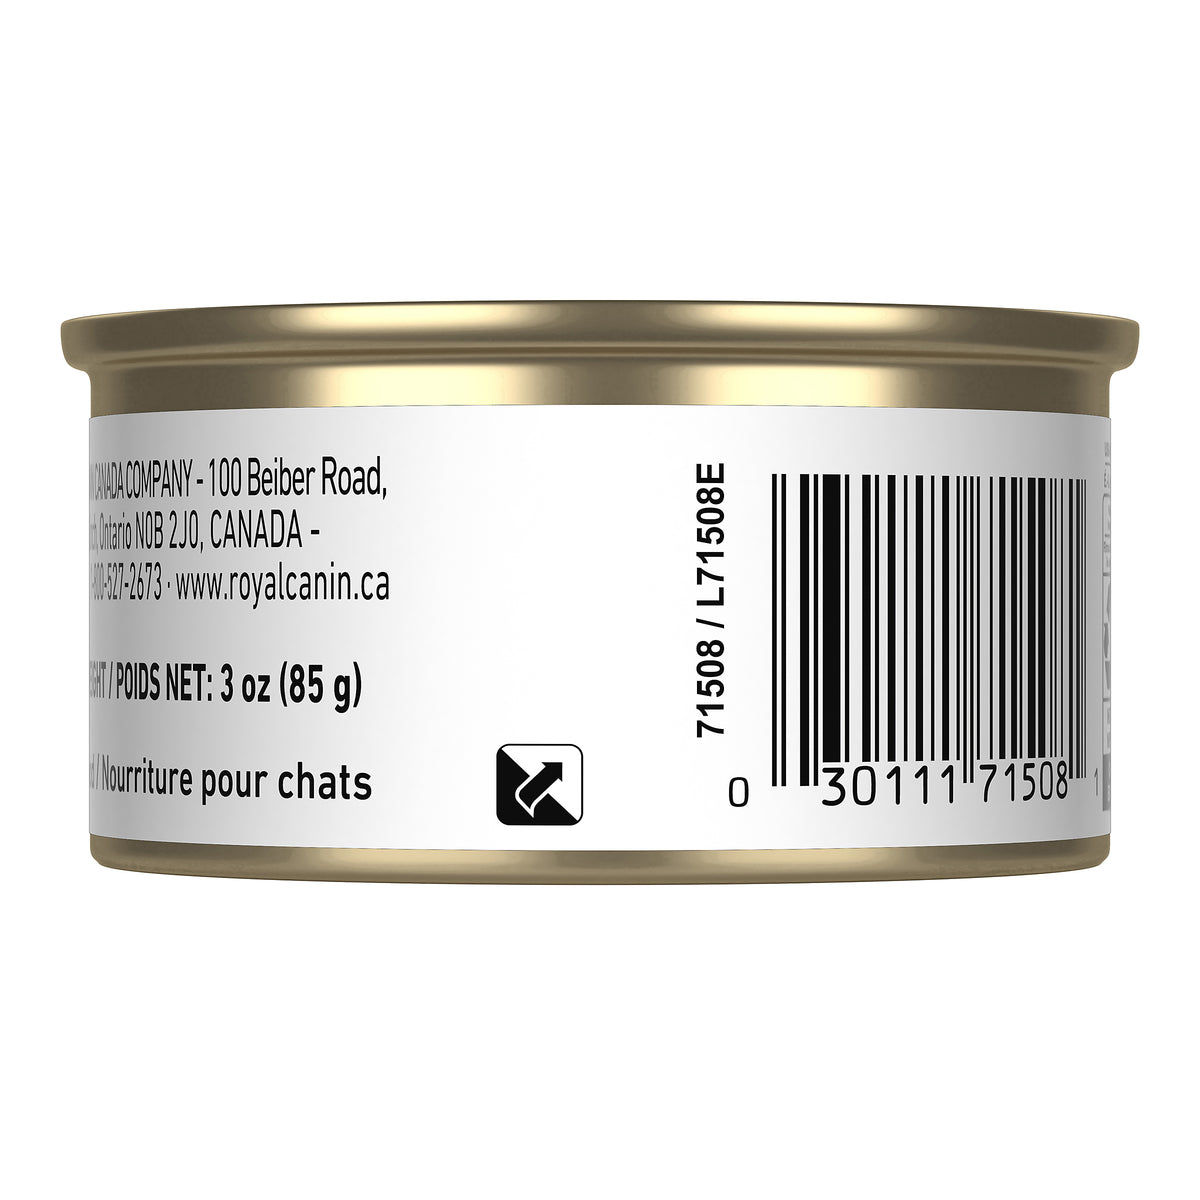 Royal Canin Chaton / Kitten (Fines tranches en sauce) - Nourriture humide en conserve pour chats